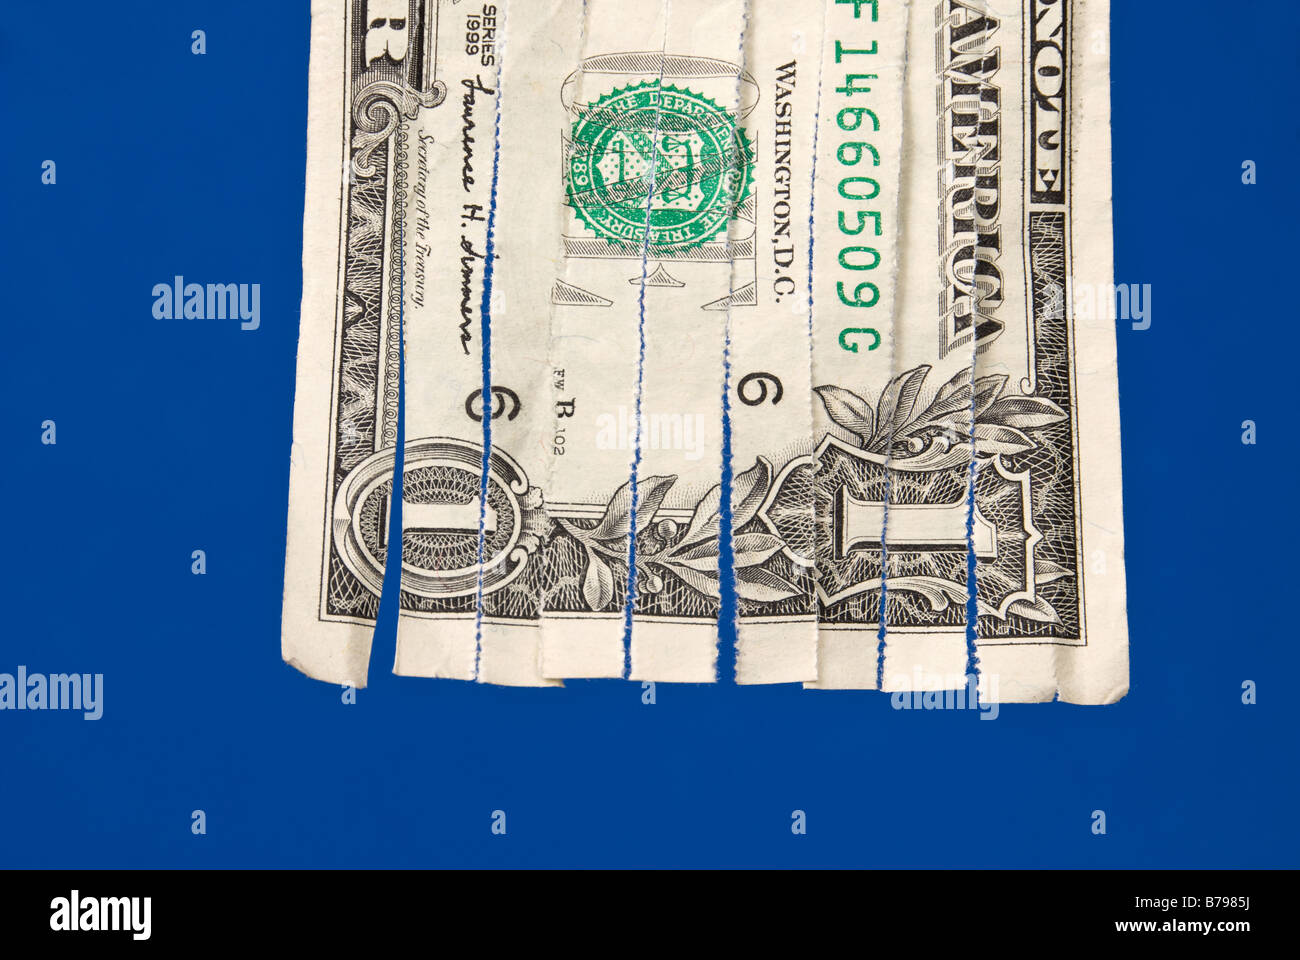 Ein zerfetztes Dollarschein isoliert auf blau, die das Bild für wirtschaftliche finanzielle Ableitungen verwendet werden kann Stockfoto